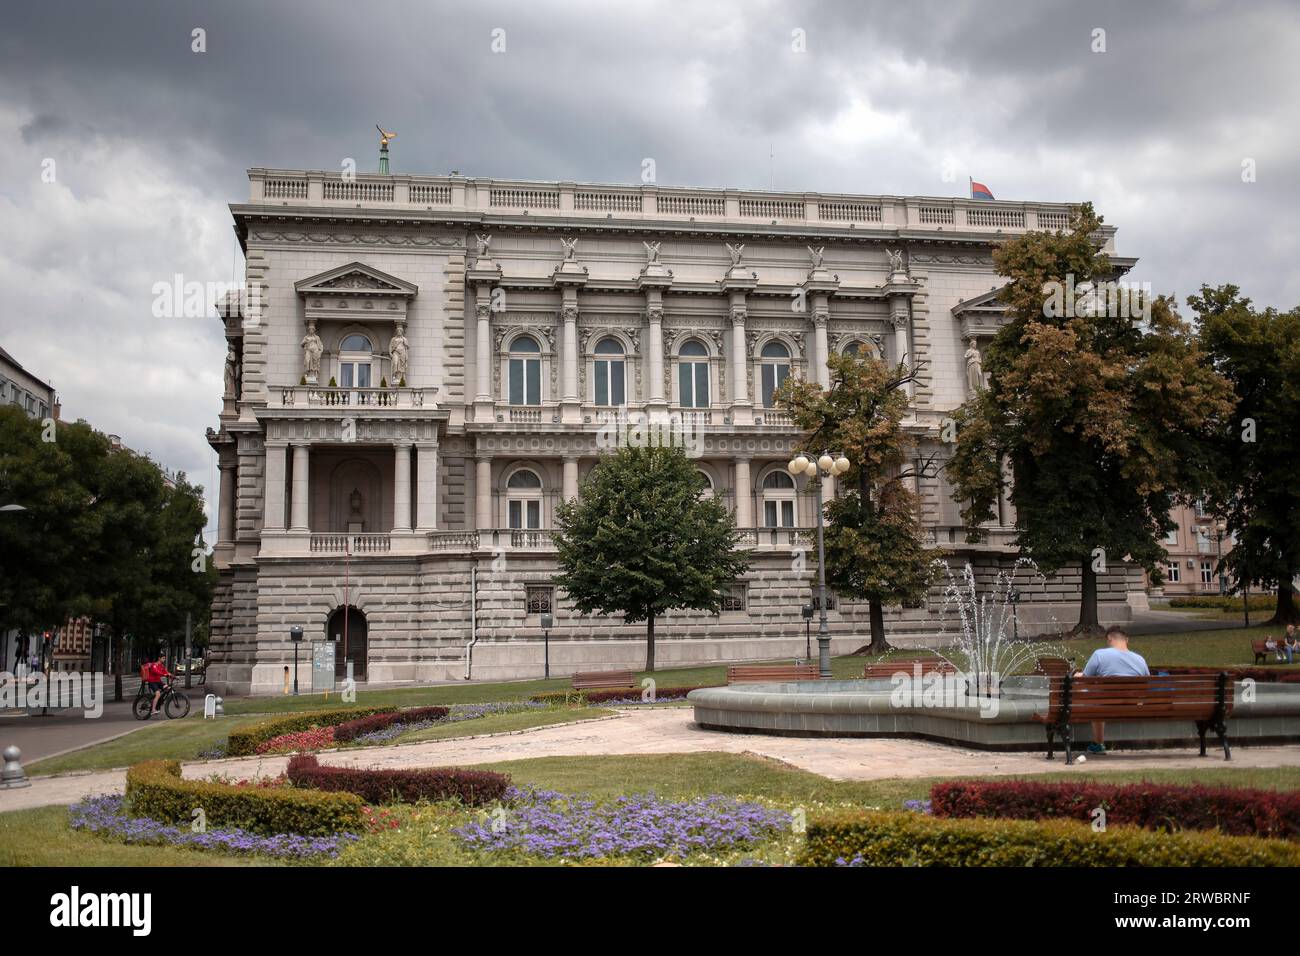 Serbie - Un bâtiment historique appelé le Vieux Palais (Stari Dvor), qui abrite l'Hôtel de ville de Belgrade Banque D'Images